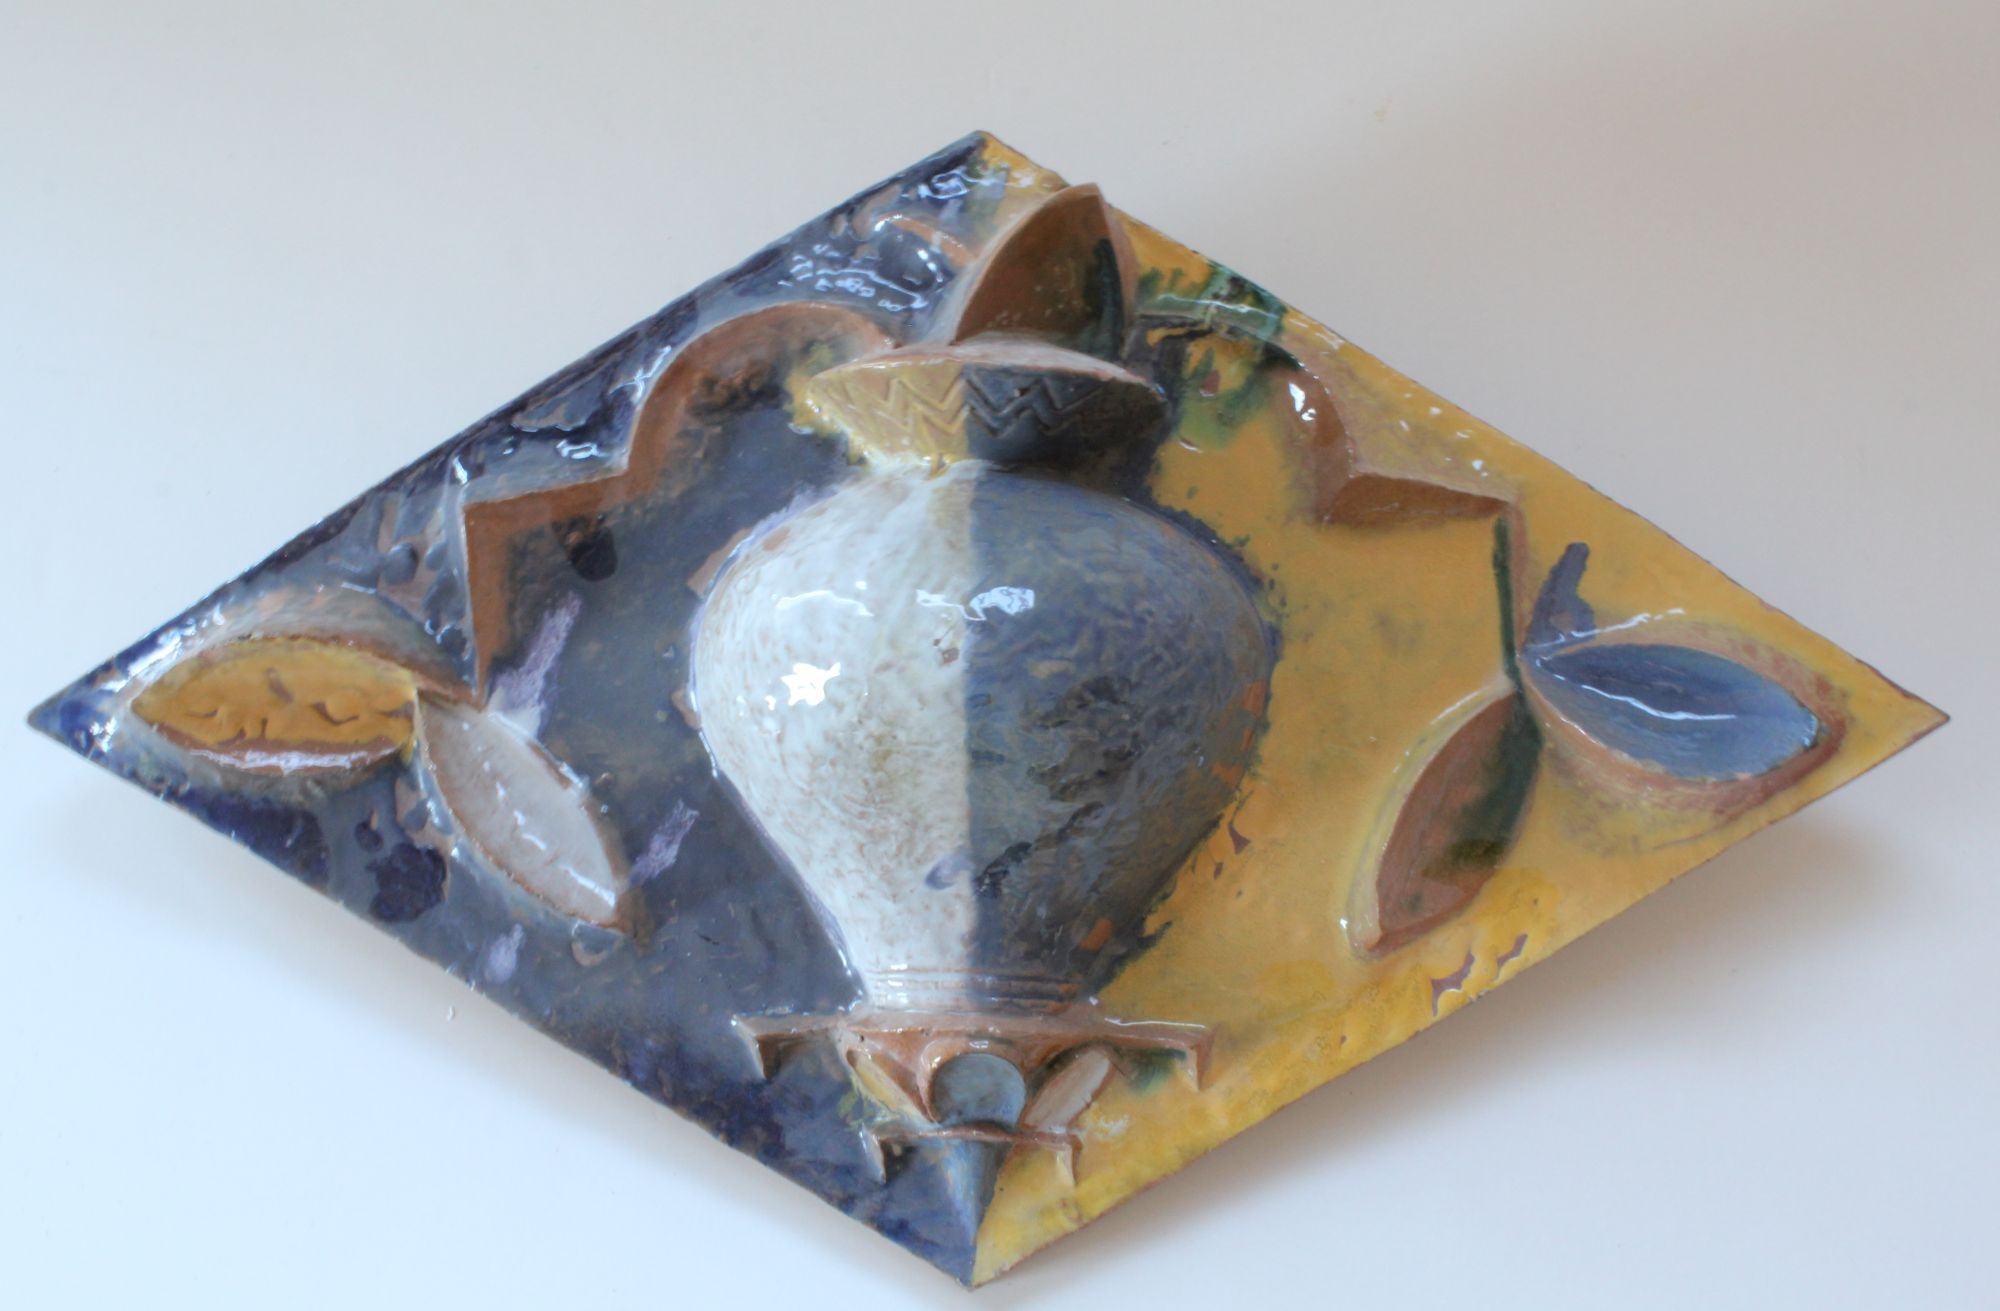 Schmuckkachel in Rautenform mit Blattmotiv und Vase (Ofen- und Keramikmuseum Velten CC BY-NC-SA)